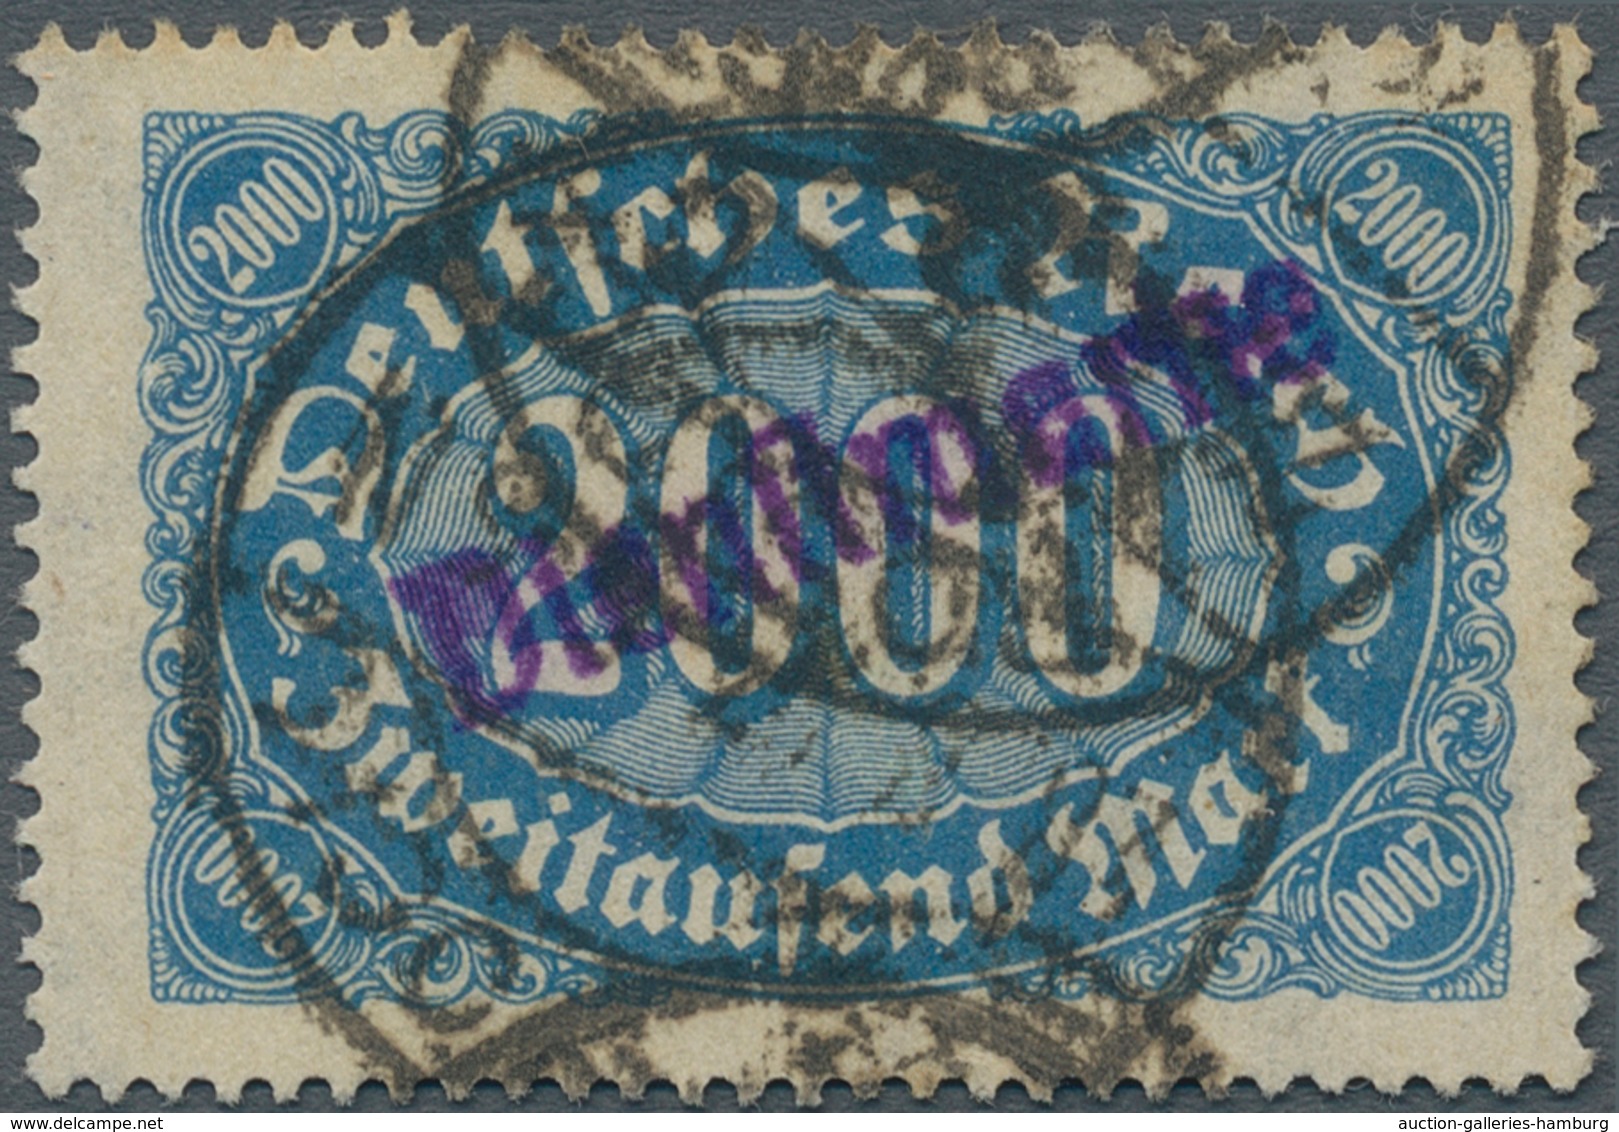 Deutsches Reich - Dienst-Kontrollaufdrucke: 1923, Freimarke 2000 Mark Mit Violettem Aufdruck "Dienst - Oficial